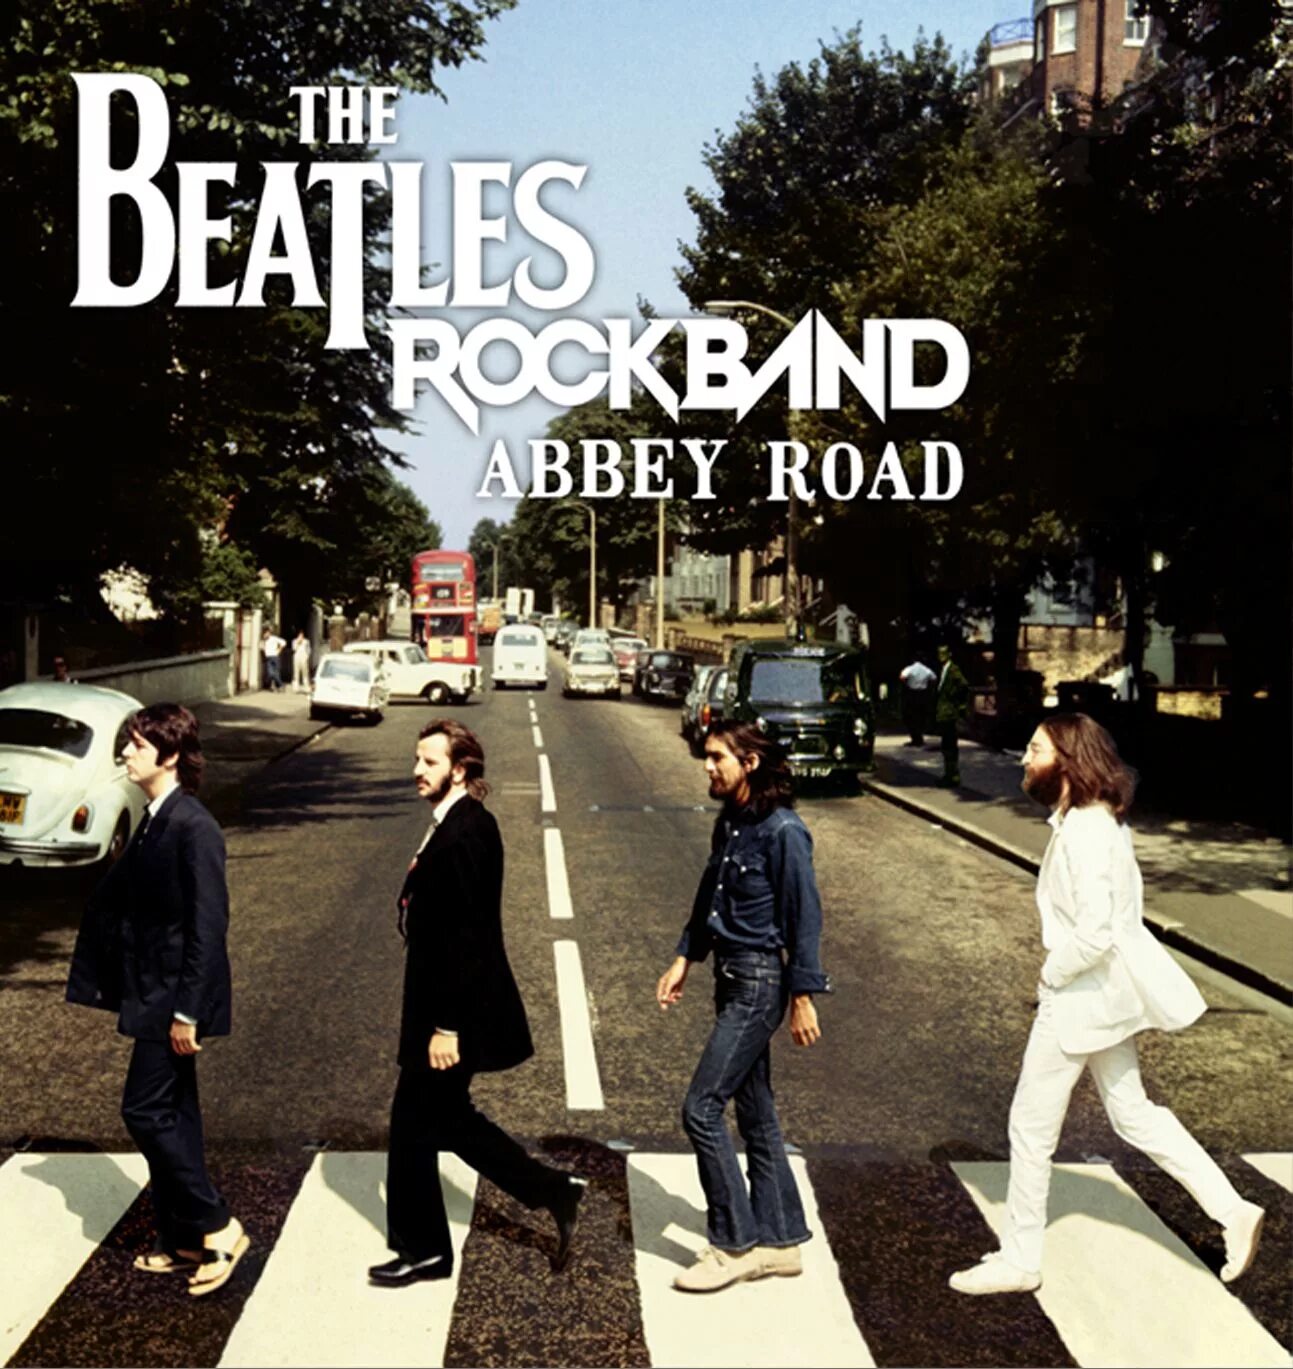 Cover beatles. Beatles "Abbey Road". Битлз обложка Abbey Road. The Beatles Abbey Road обложка альбома. The Beatles Эбби роуд.